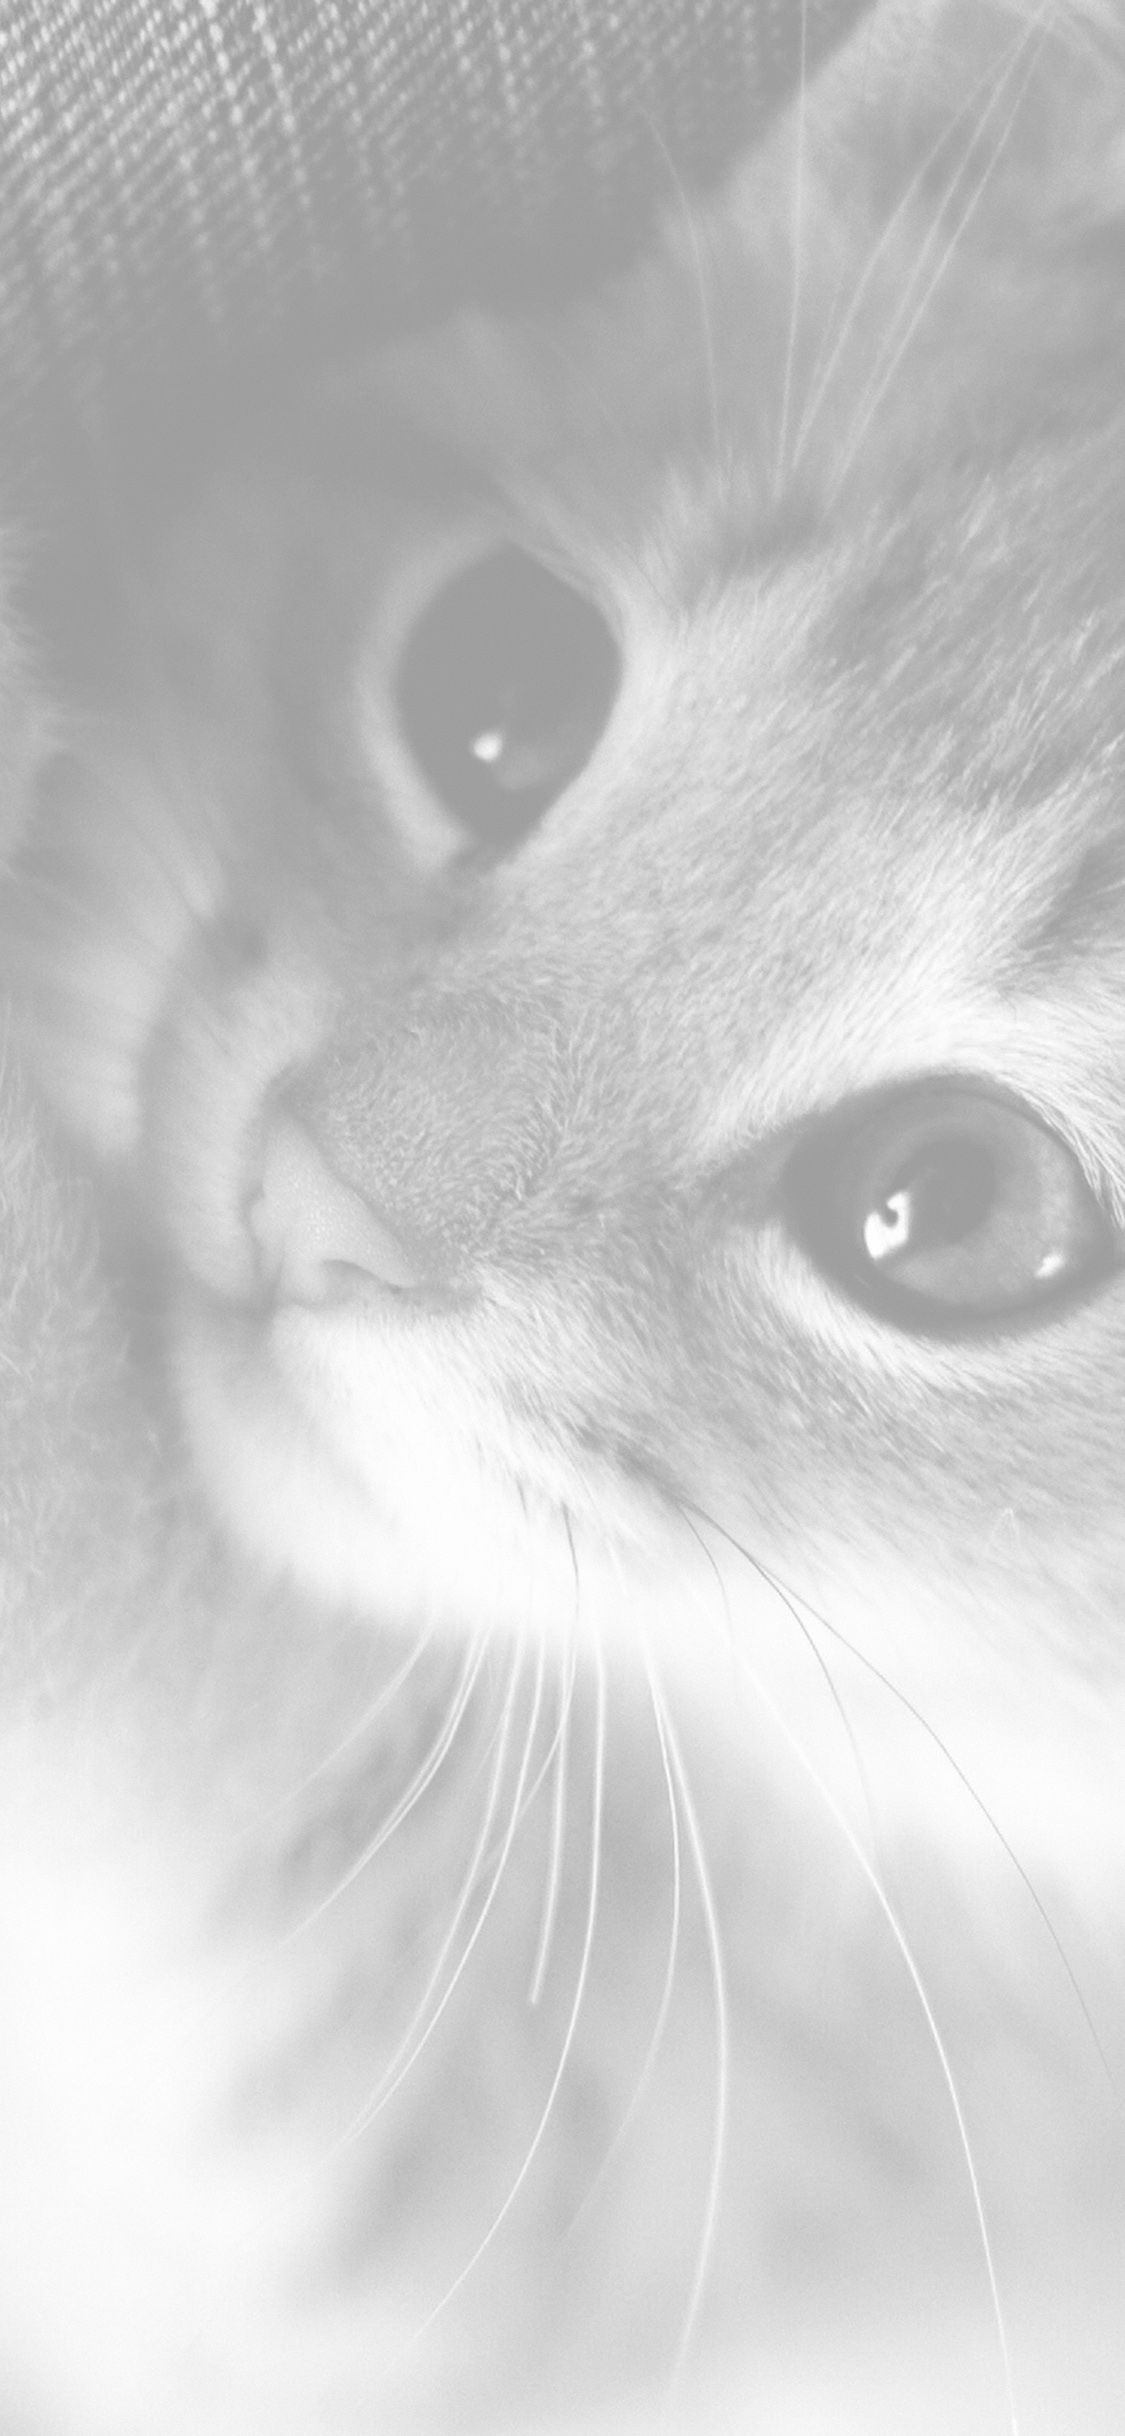 iPhone X wallpaper. cute cat kitten